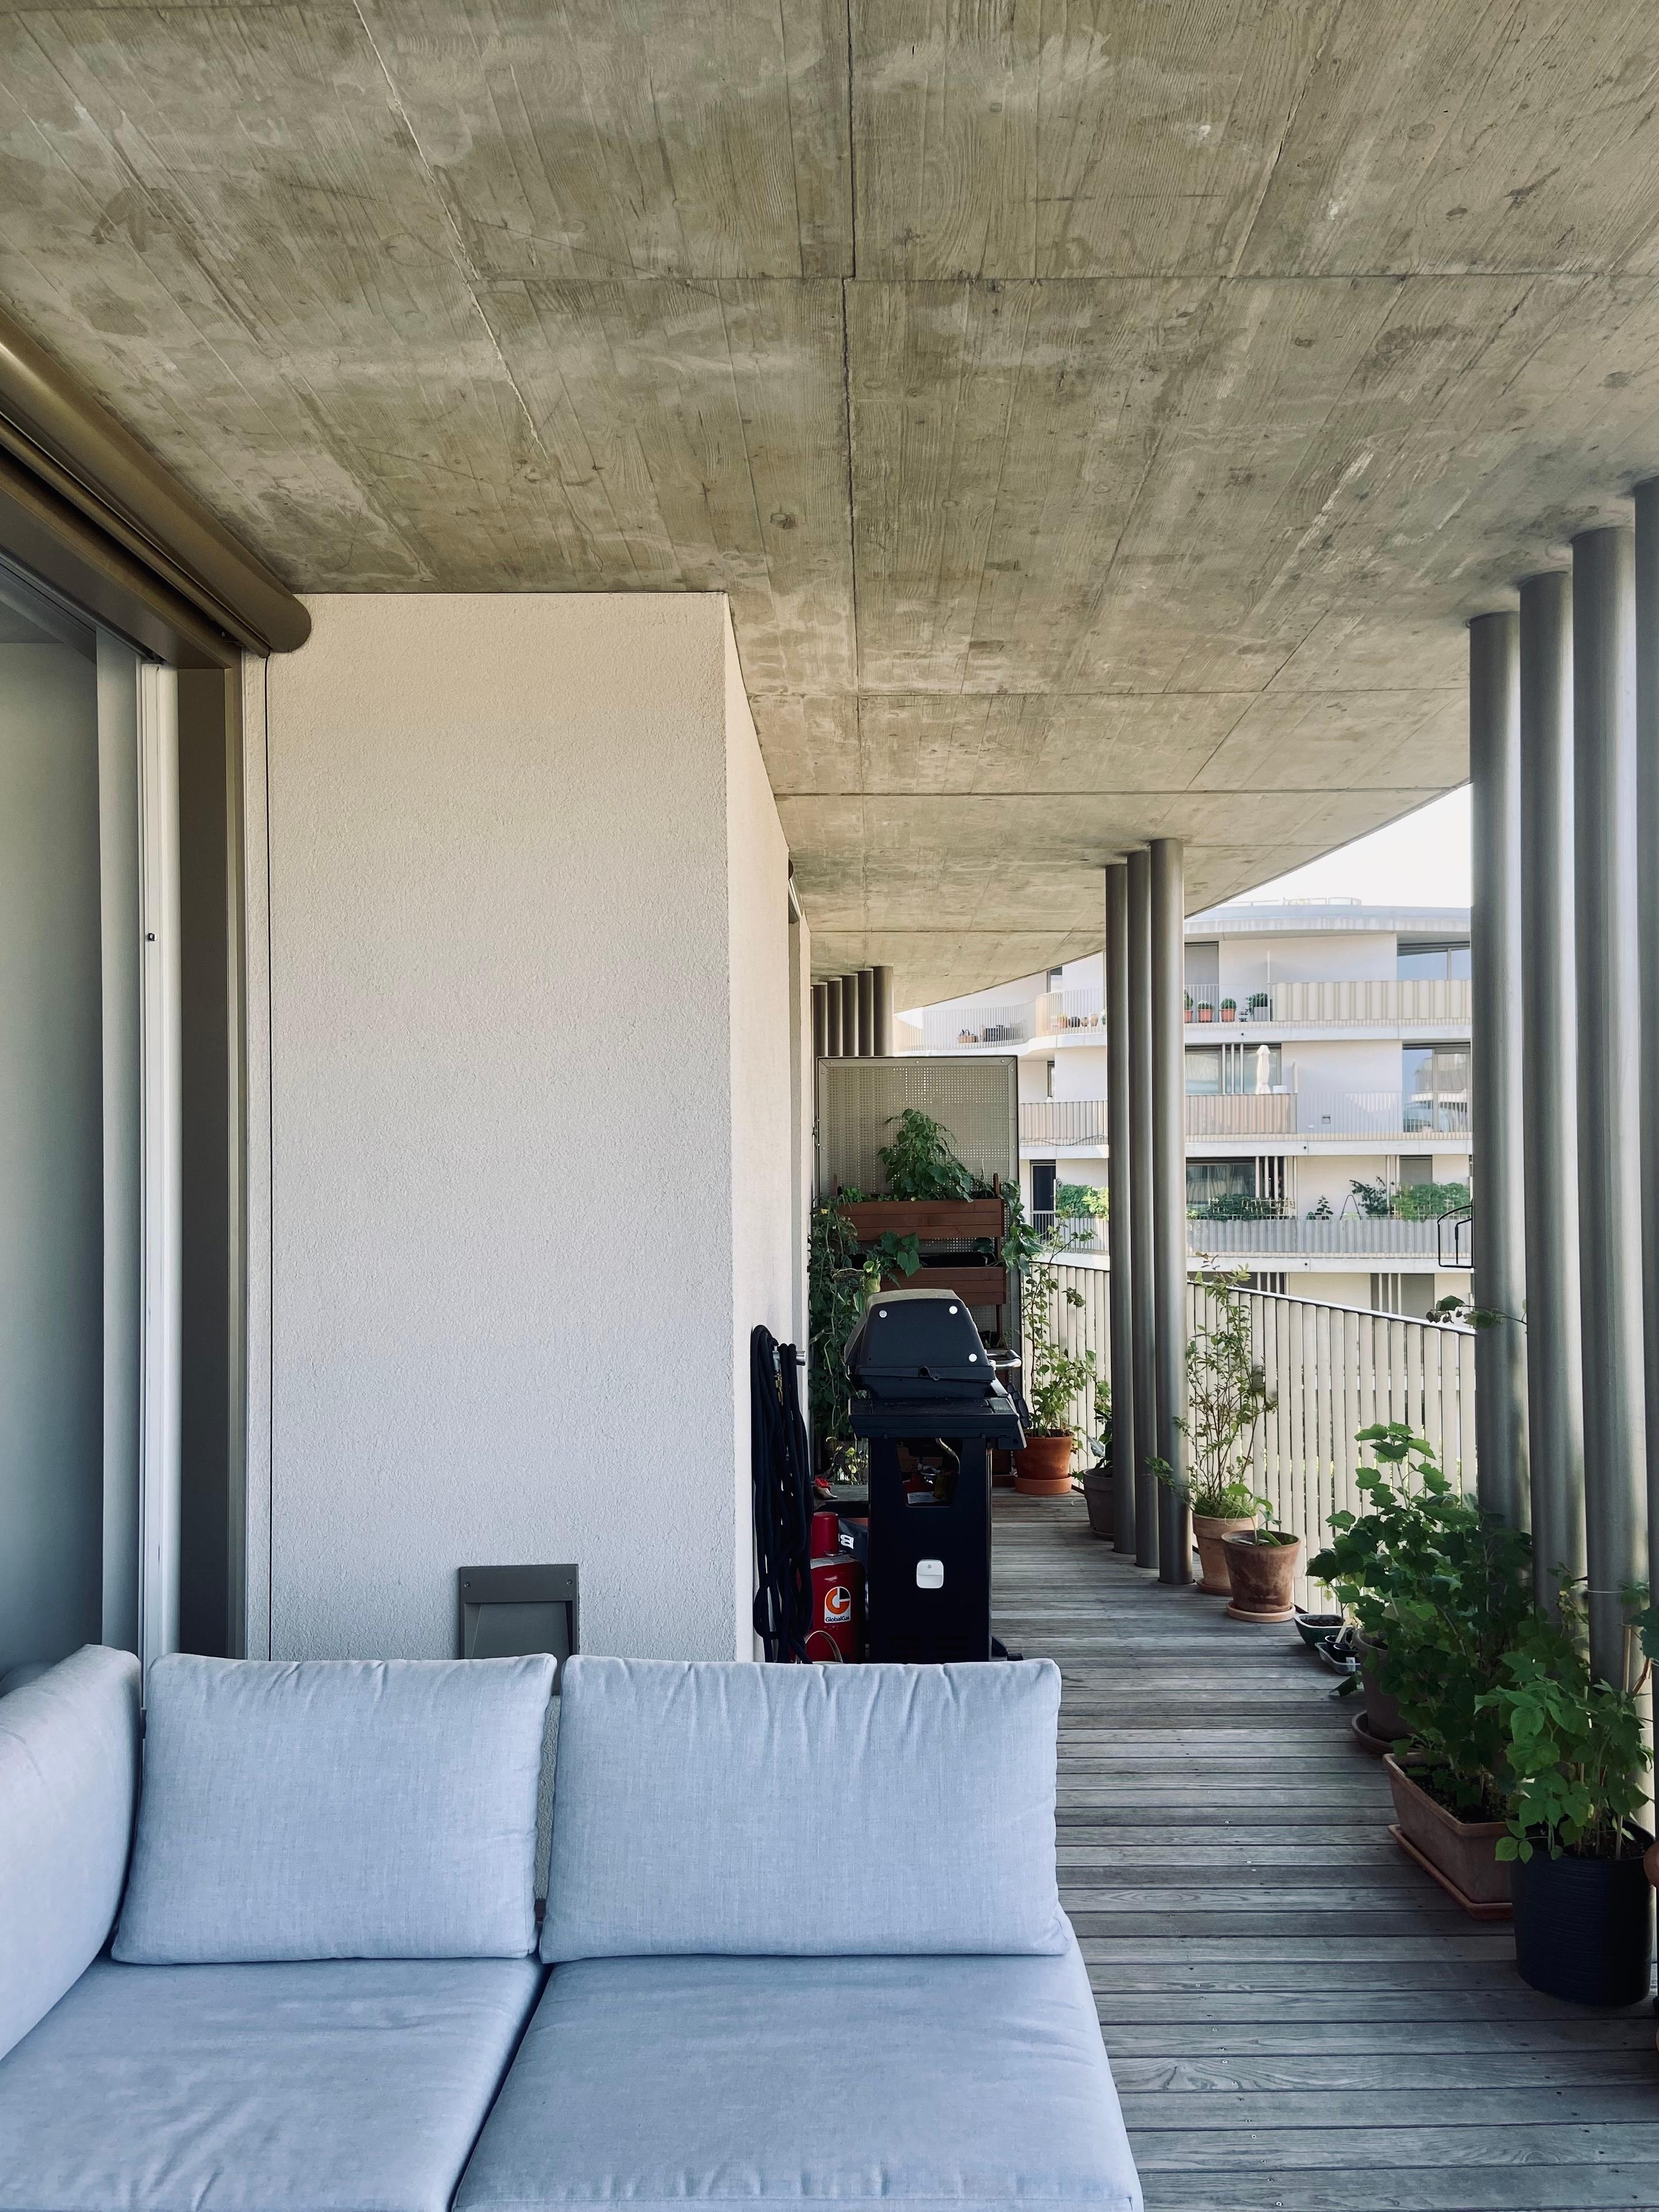 #terrasse #balkon #industrial #sichtbeton #vertikalgarten #pflanzen #hochbett #griller #grillen 